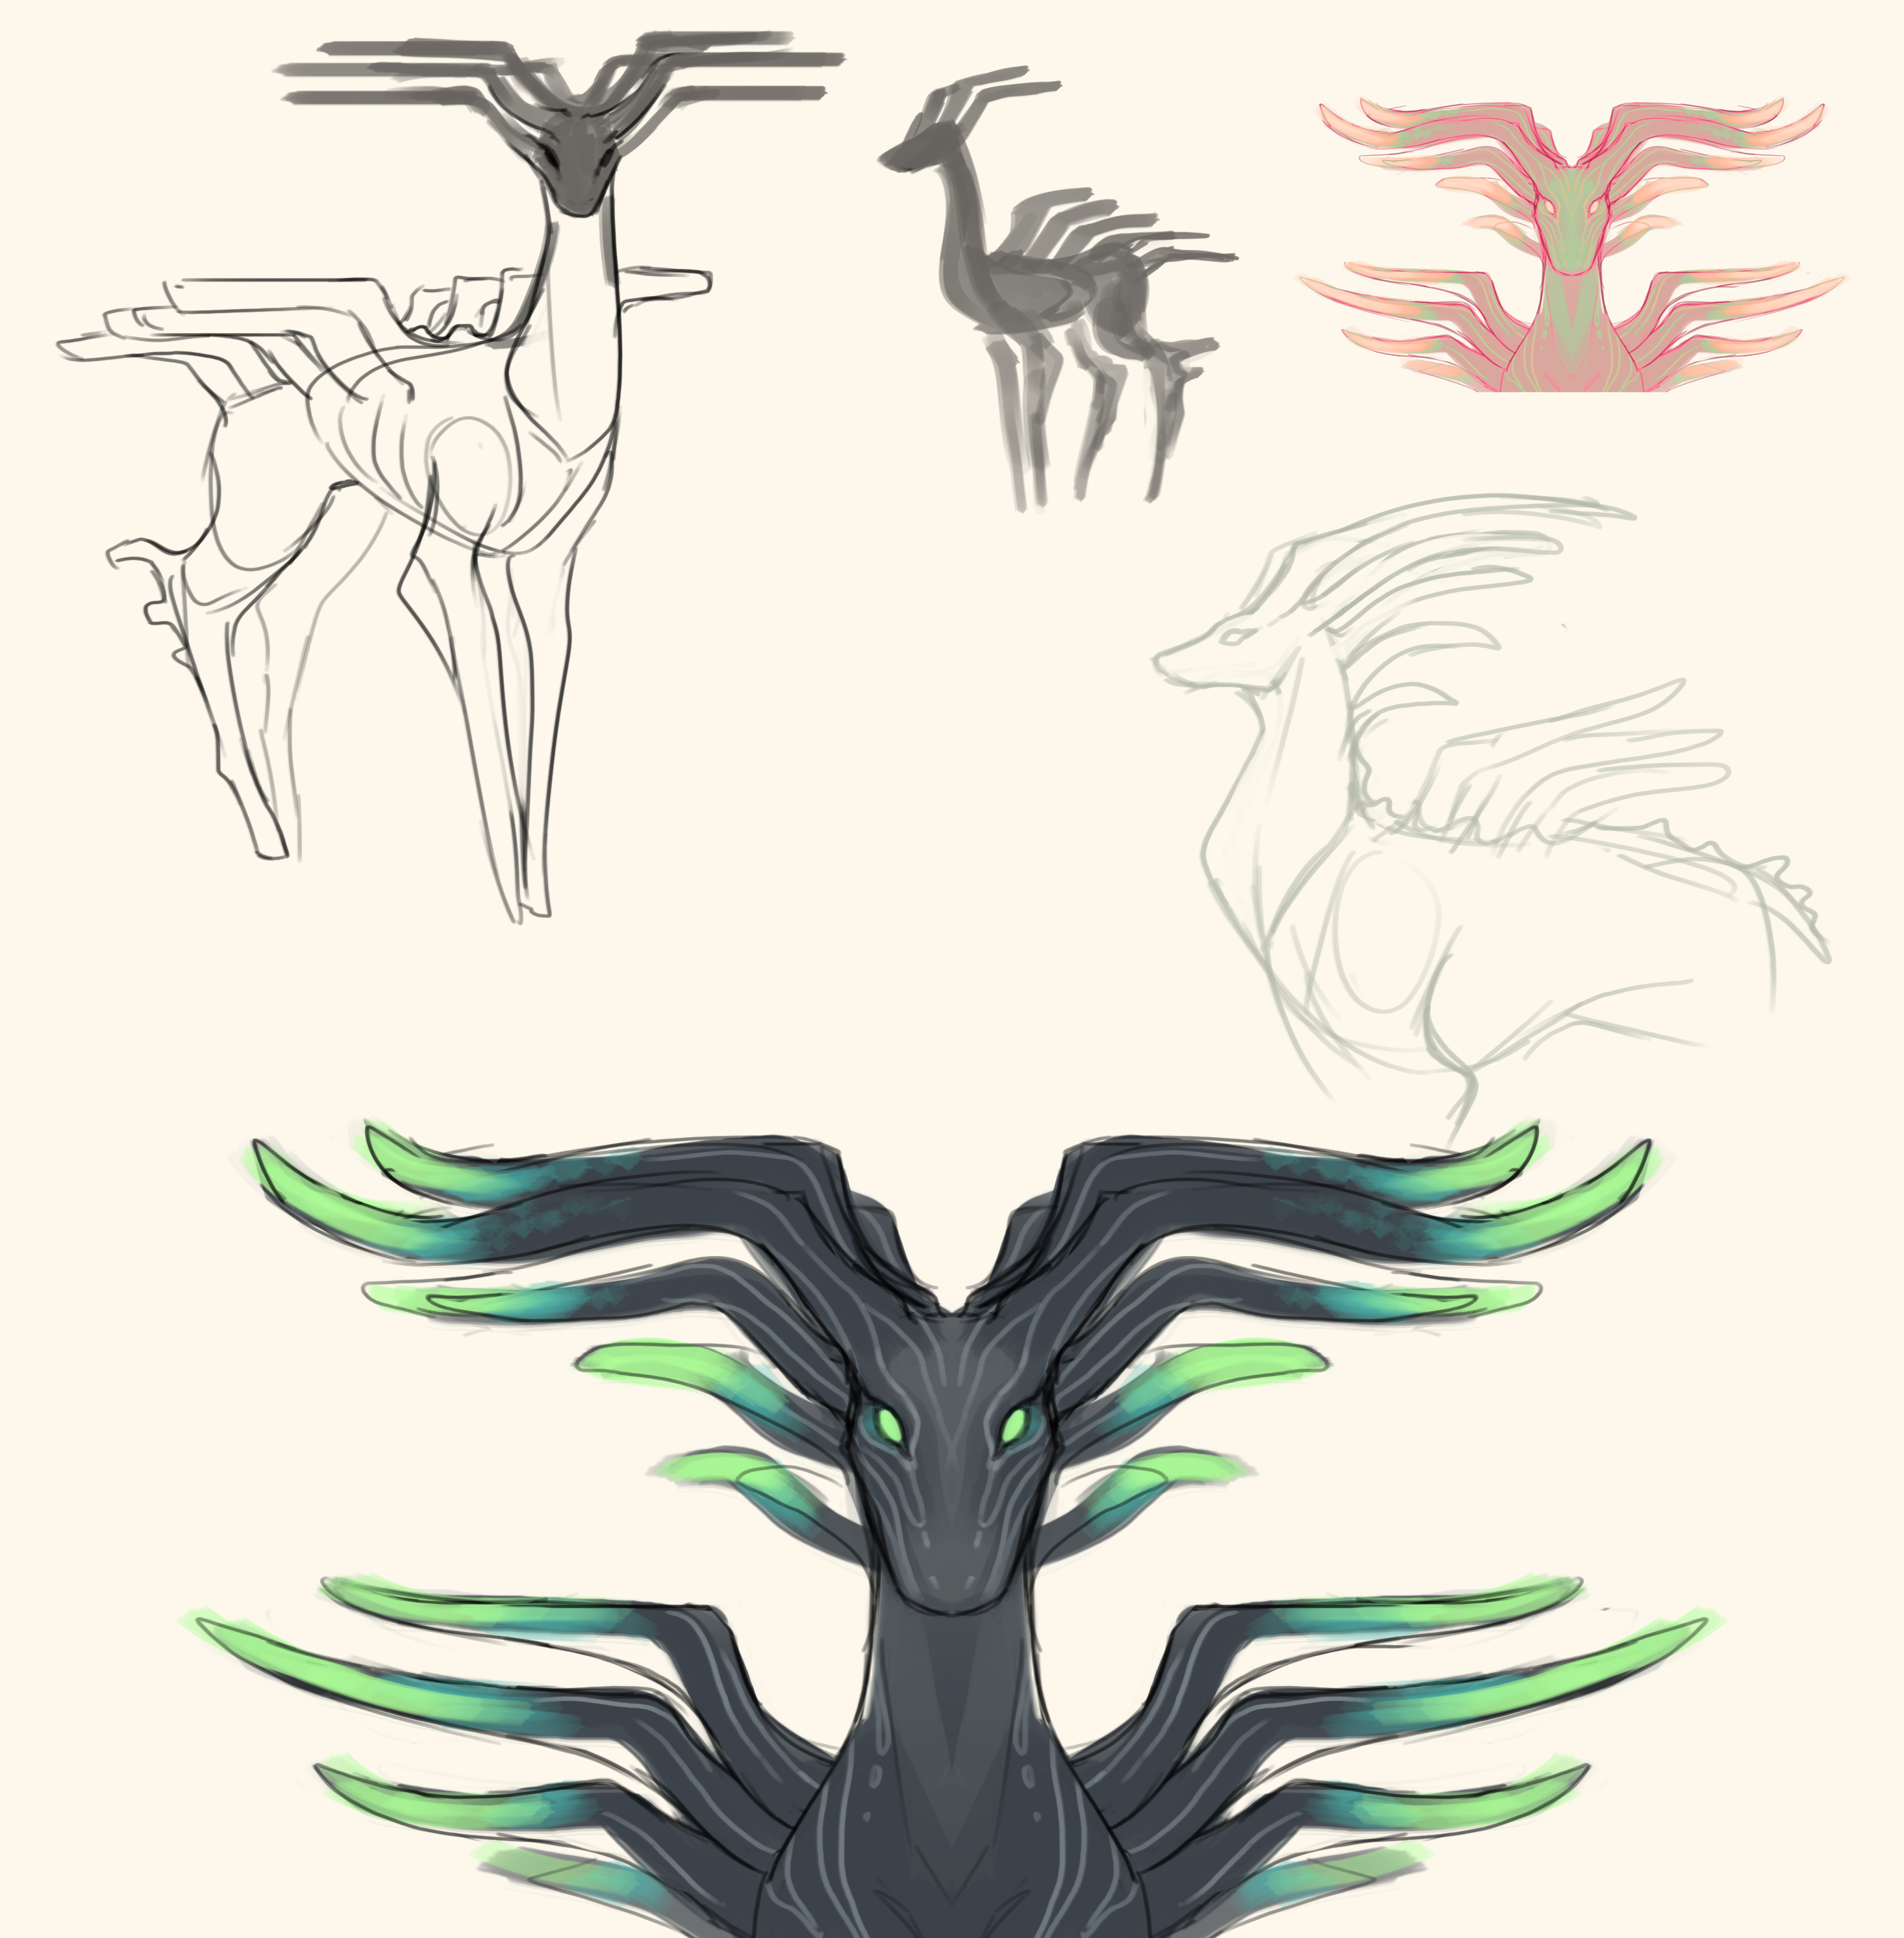 100 Creatures of Sonaria ideas  creatures, creature concept art, creature  concept